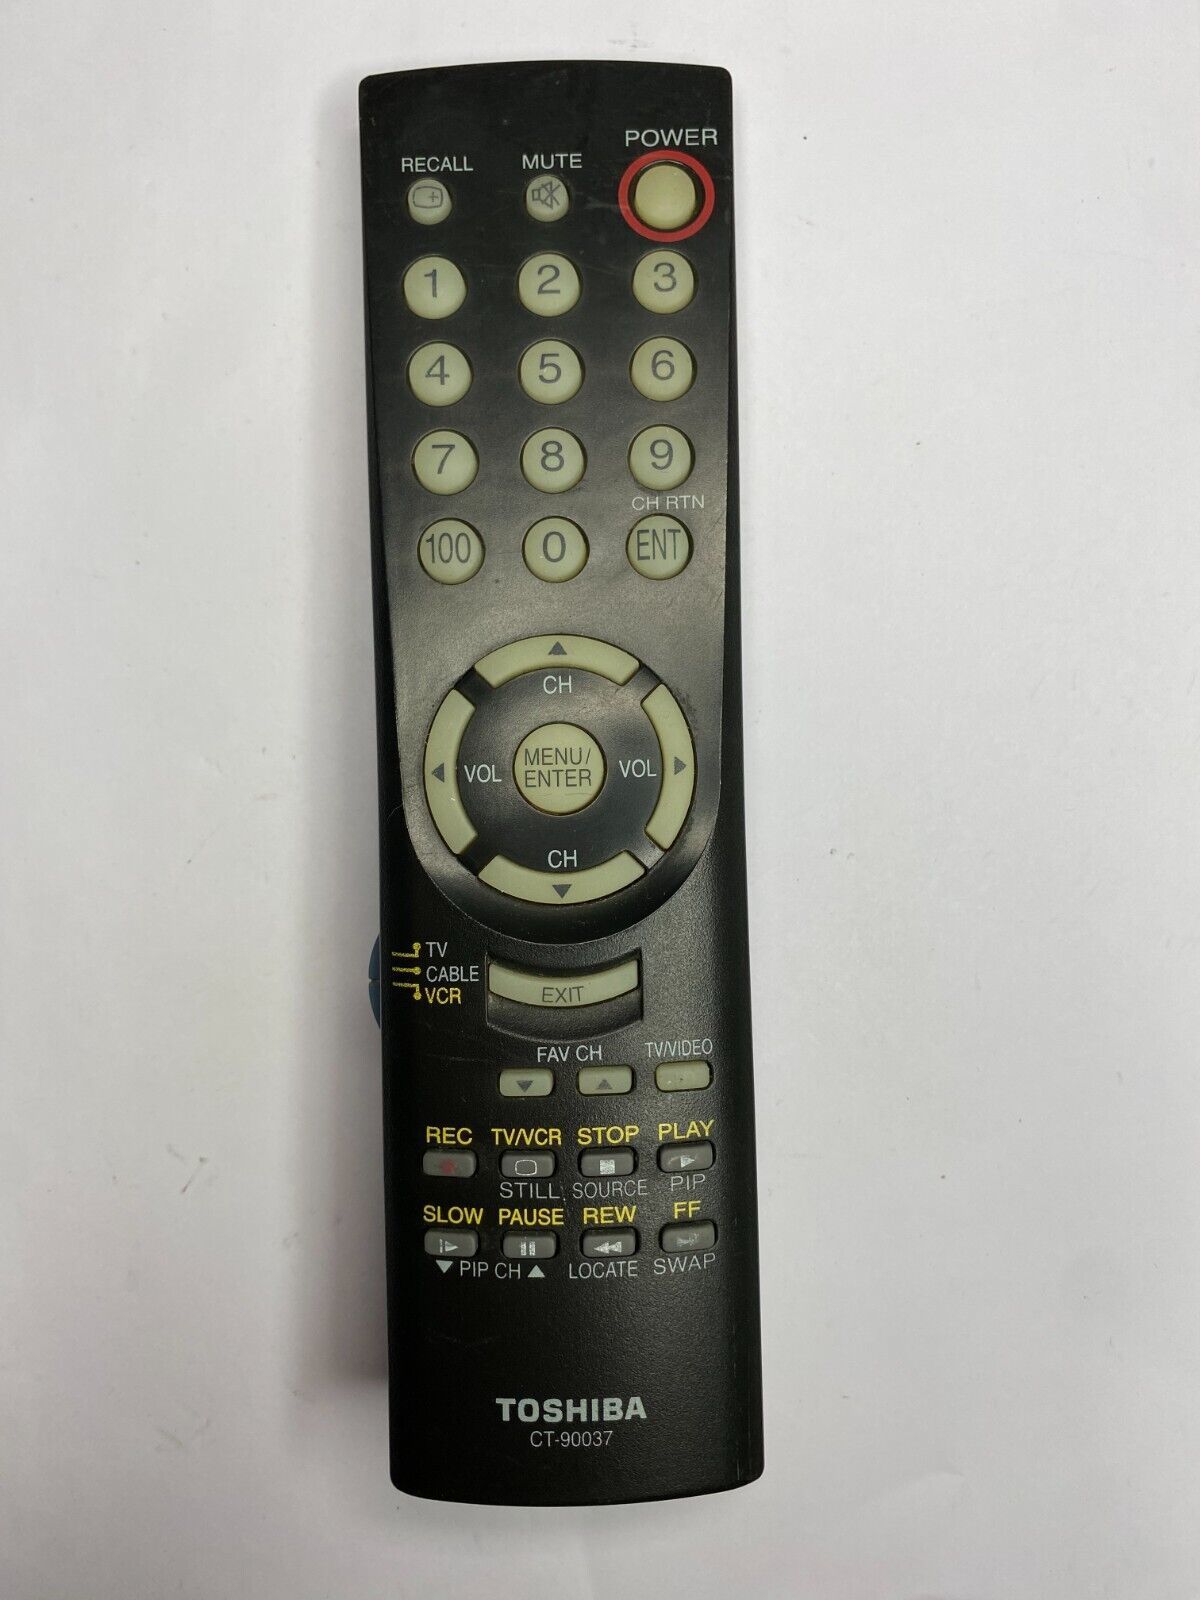 Toshiba CT-90037 TV Remote for 43A10 50A11 50A50 50A50R 50A60 50A60A 55A10 32A42 - $7.95